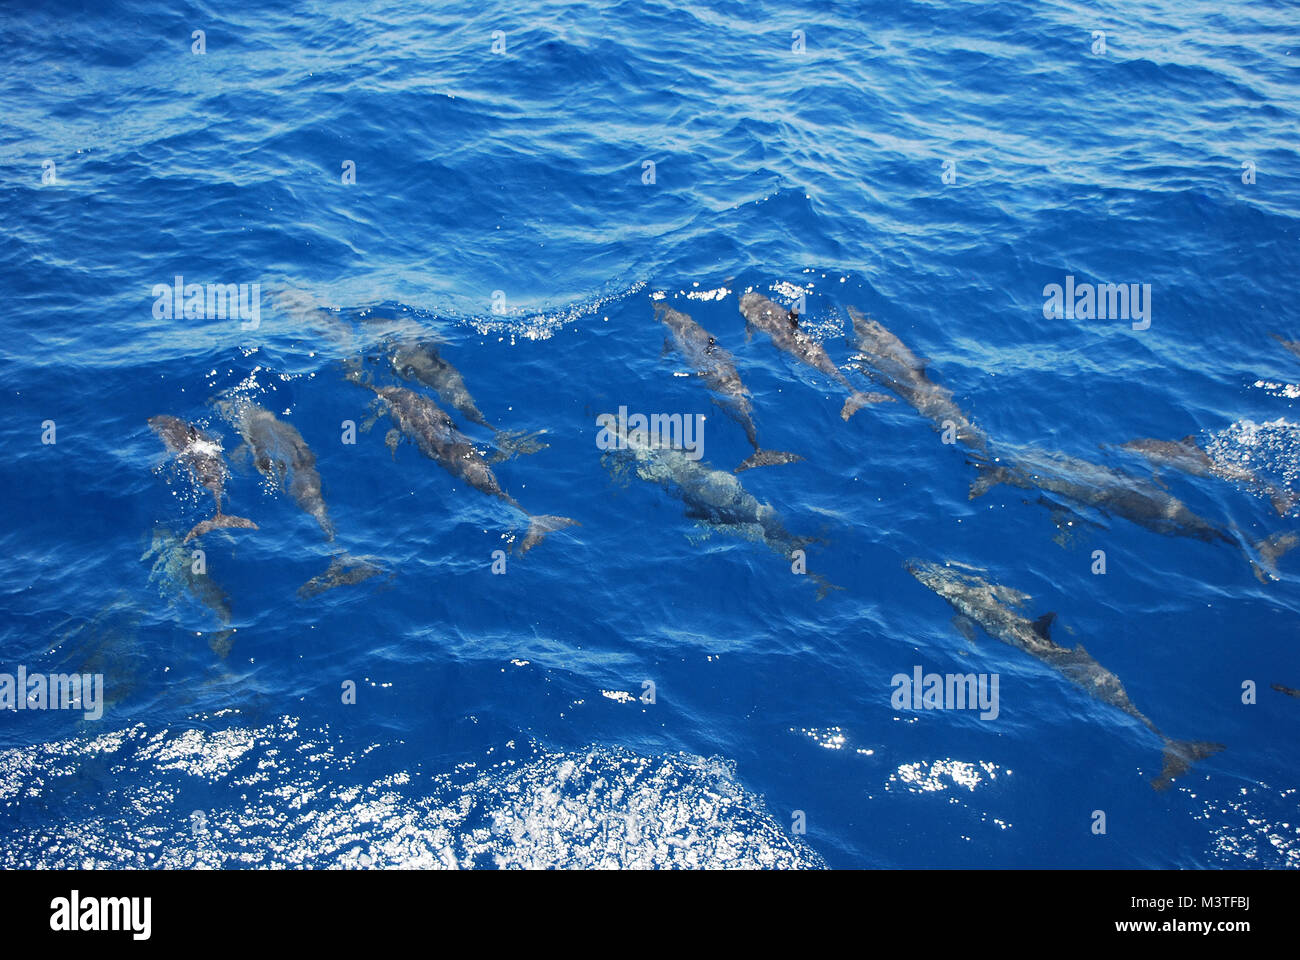 many small dolphin swim alongside boat in the sea Stock Photo